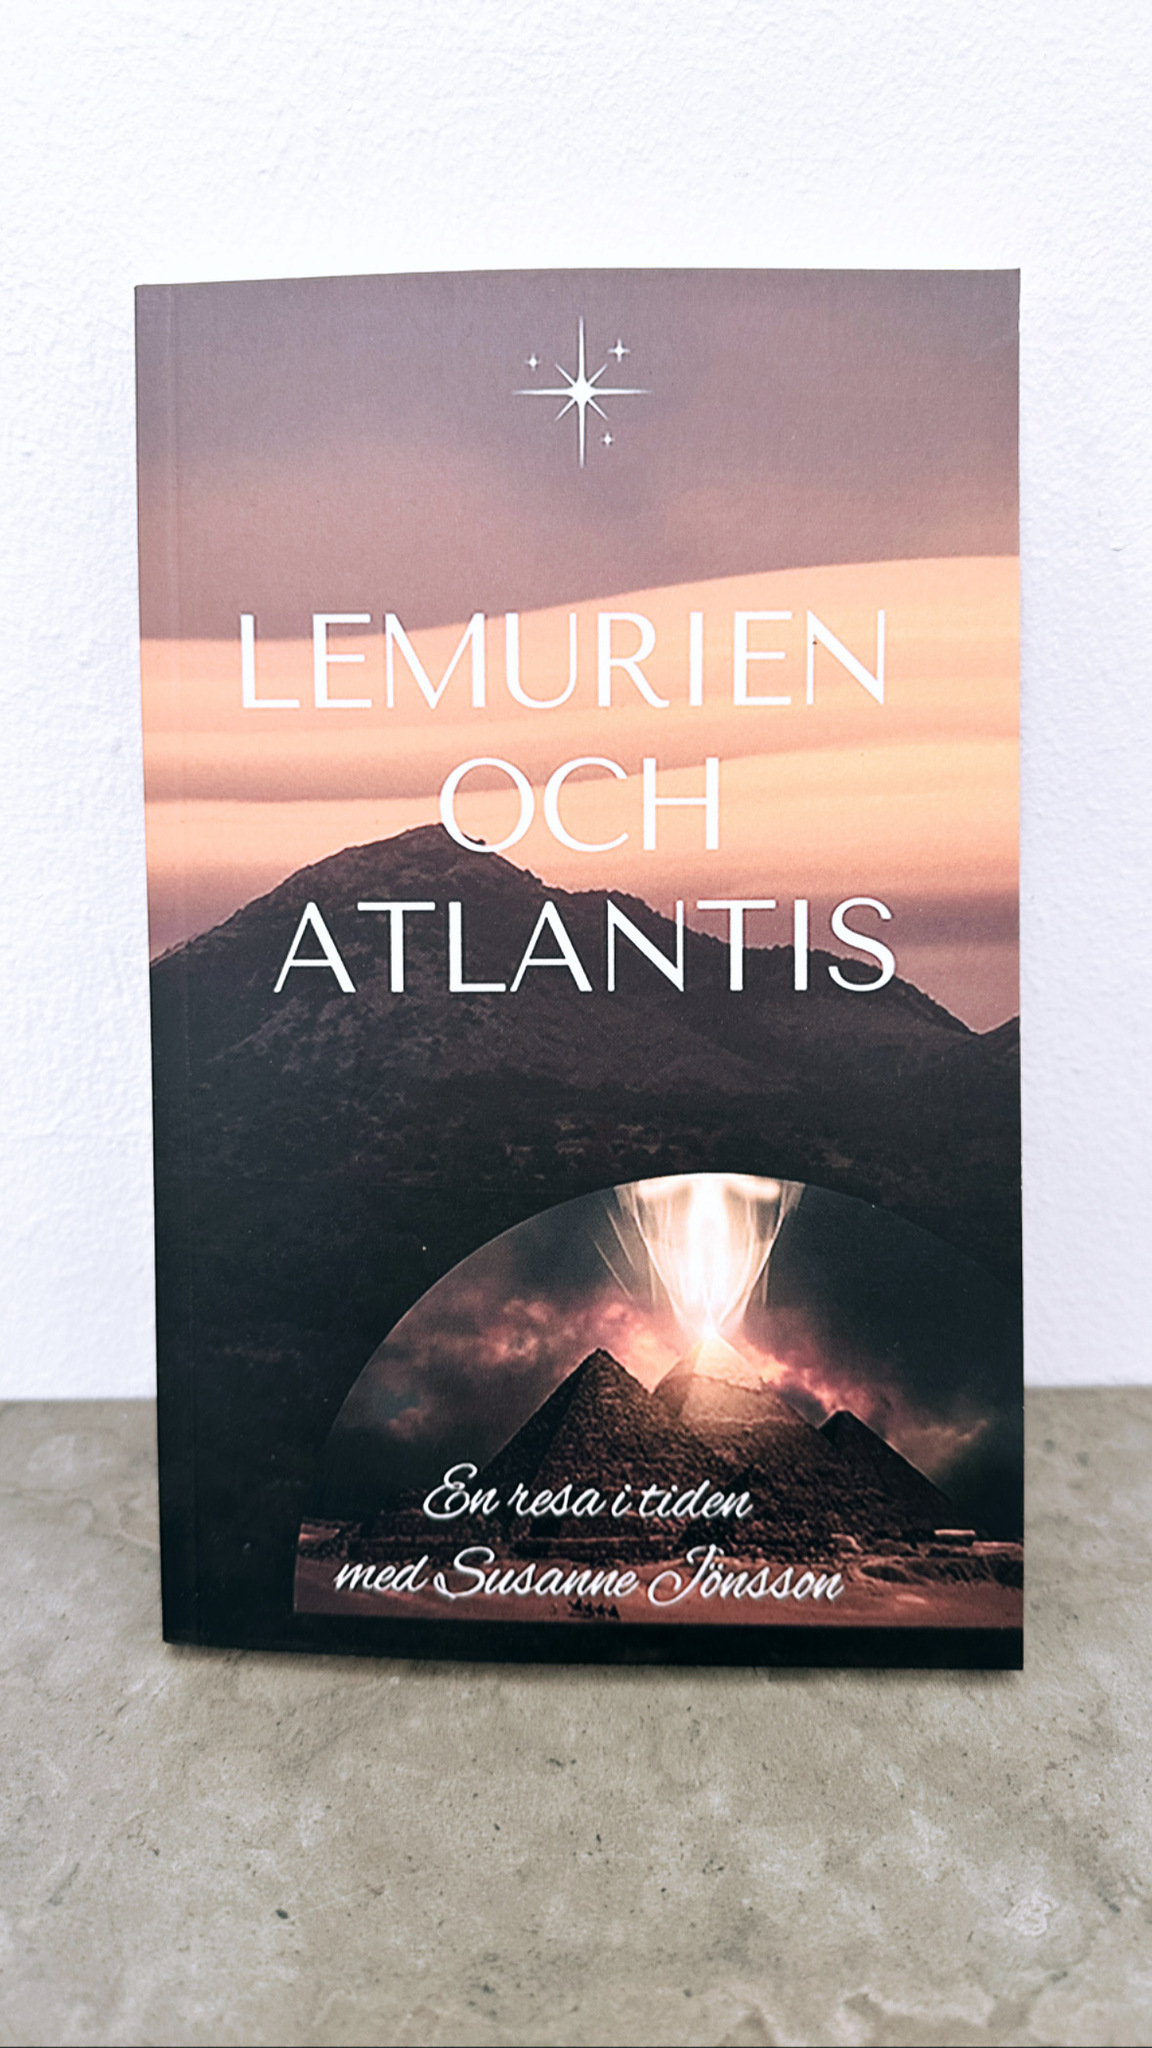 Lemurian och Atlantis av Susanne Jönsson